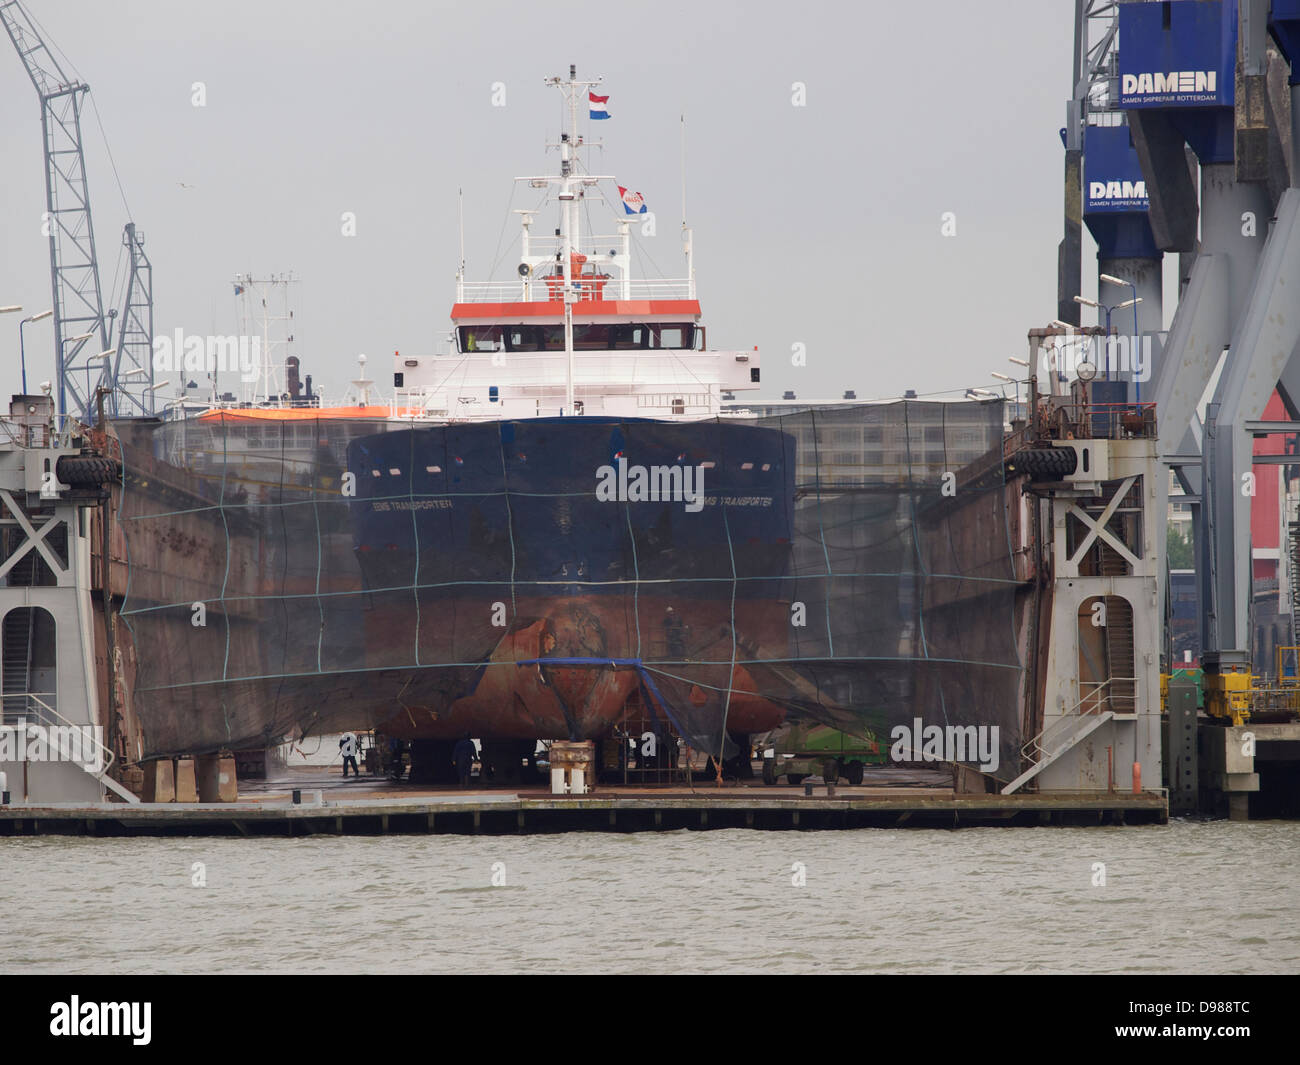 Das Schiff im Trockendock Damen Shiprepair für Wartungs- oder Reparaturarbeiten in den Hafen von Rotterdam, die Niederlande Stockfoto